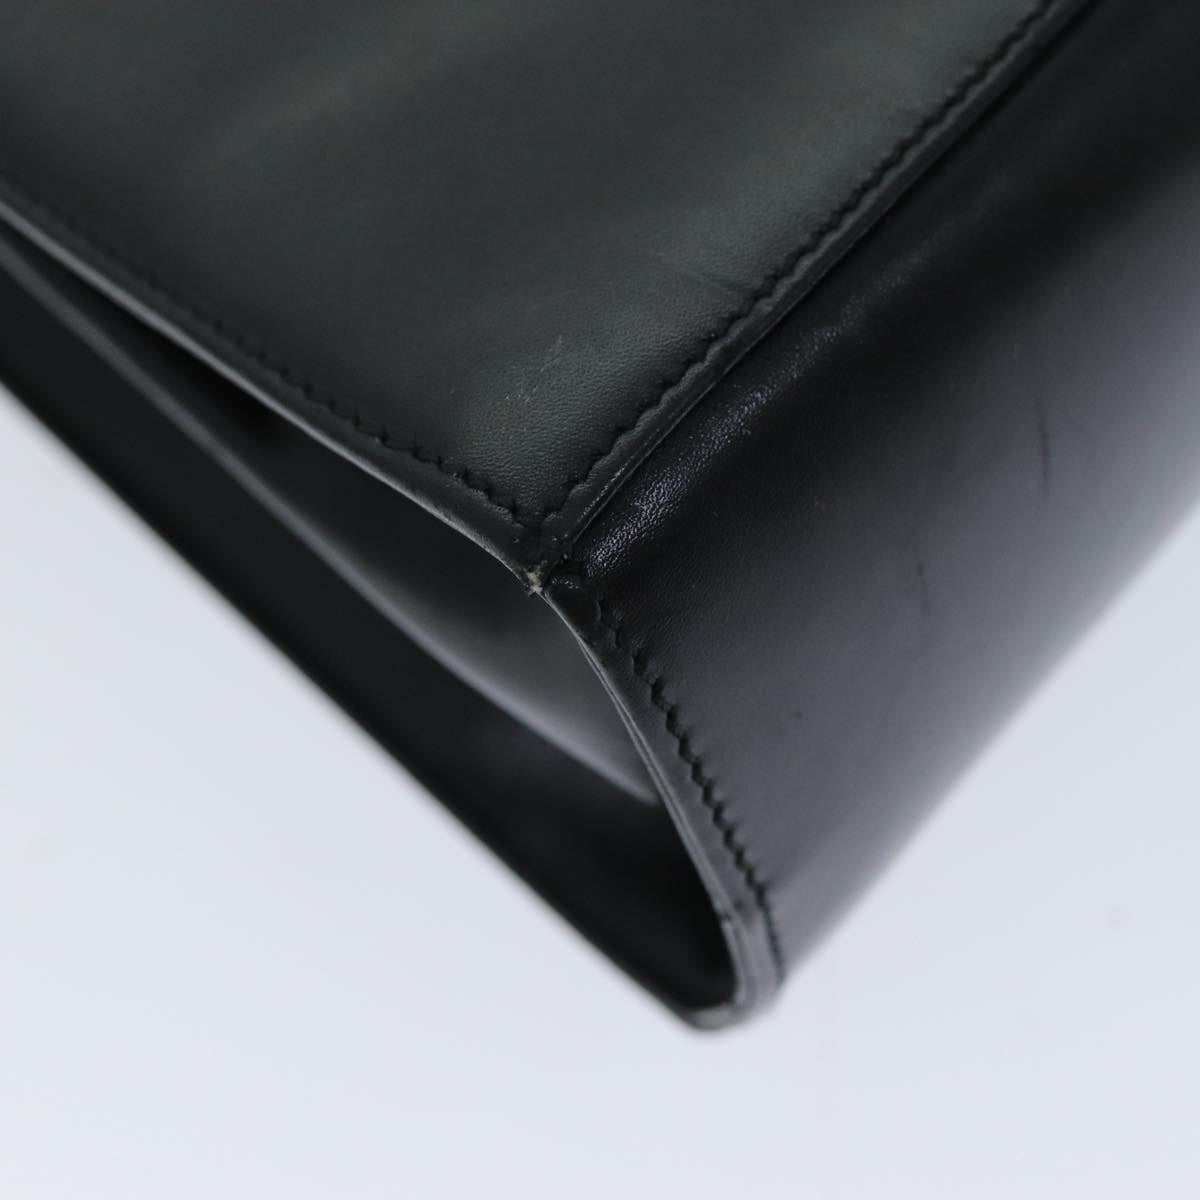 Salvatore Ferragamo Gancini Hand Bag Leather Black Auth 76730